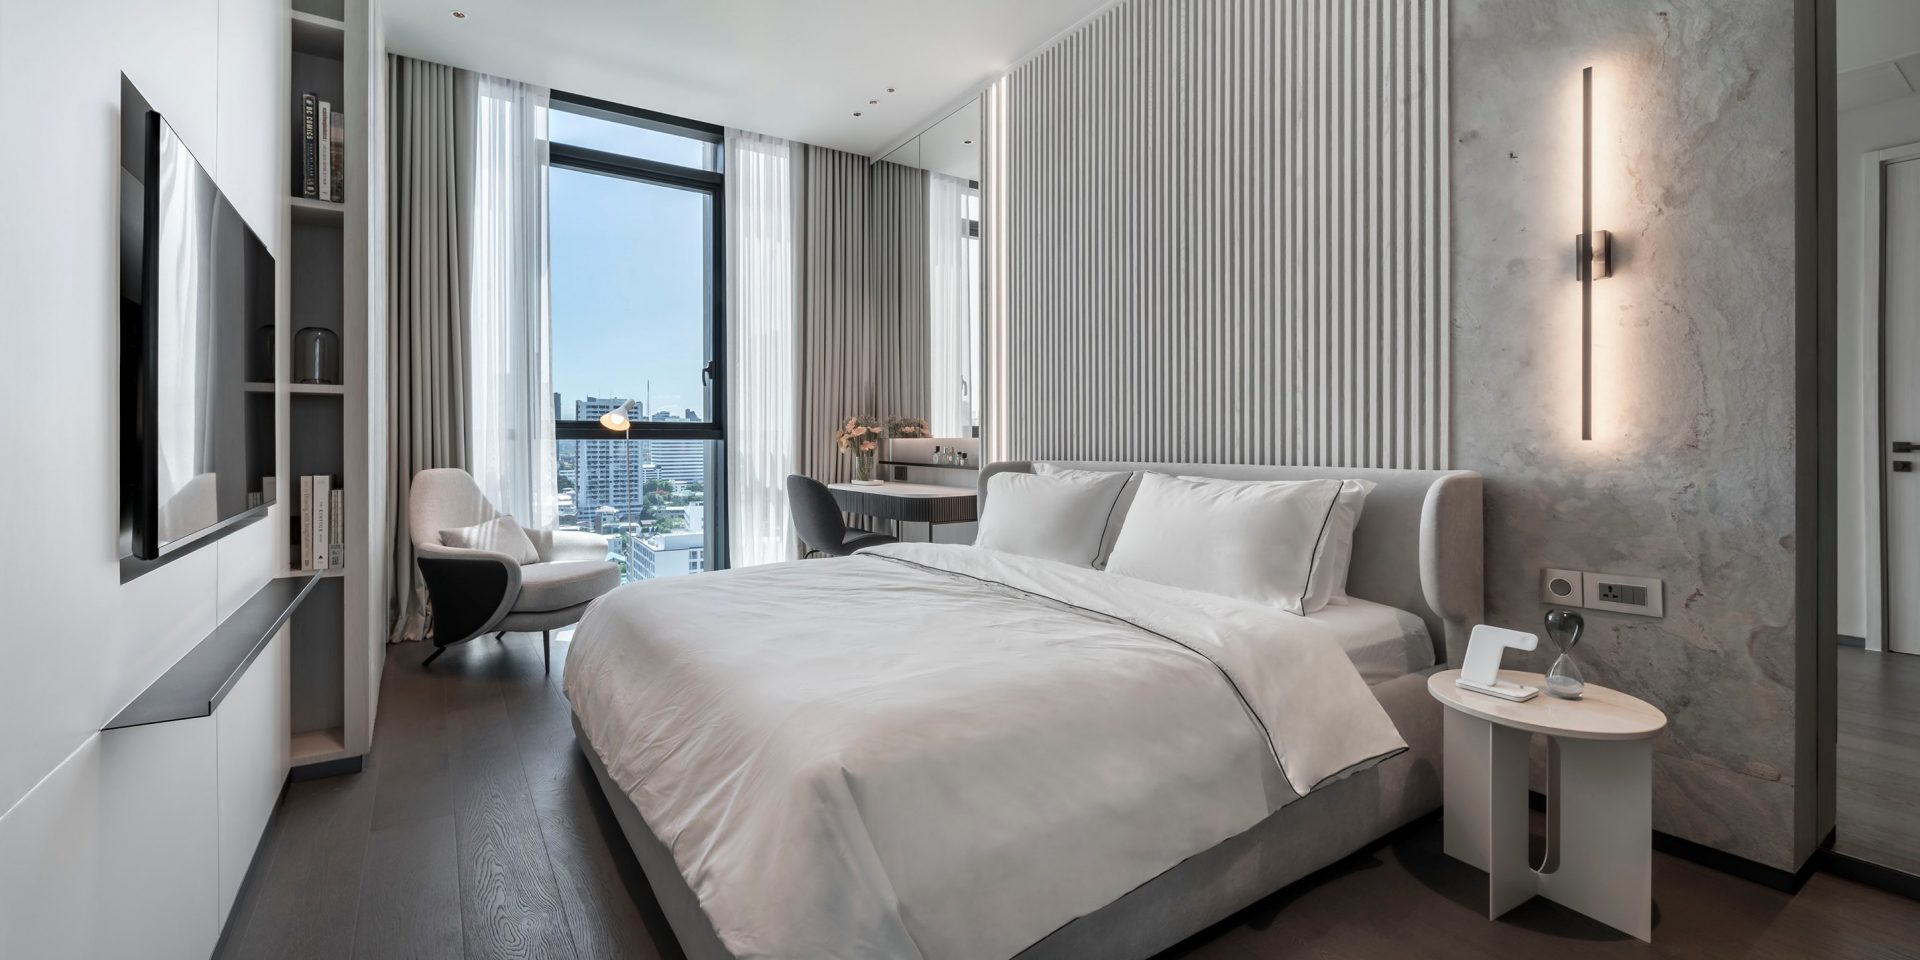 Thiết kế nội thất phòng ngủ theo phong cách hiện đại 